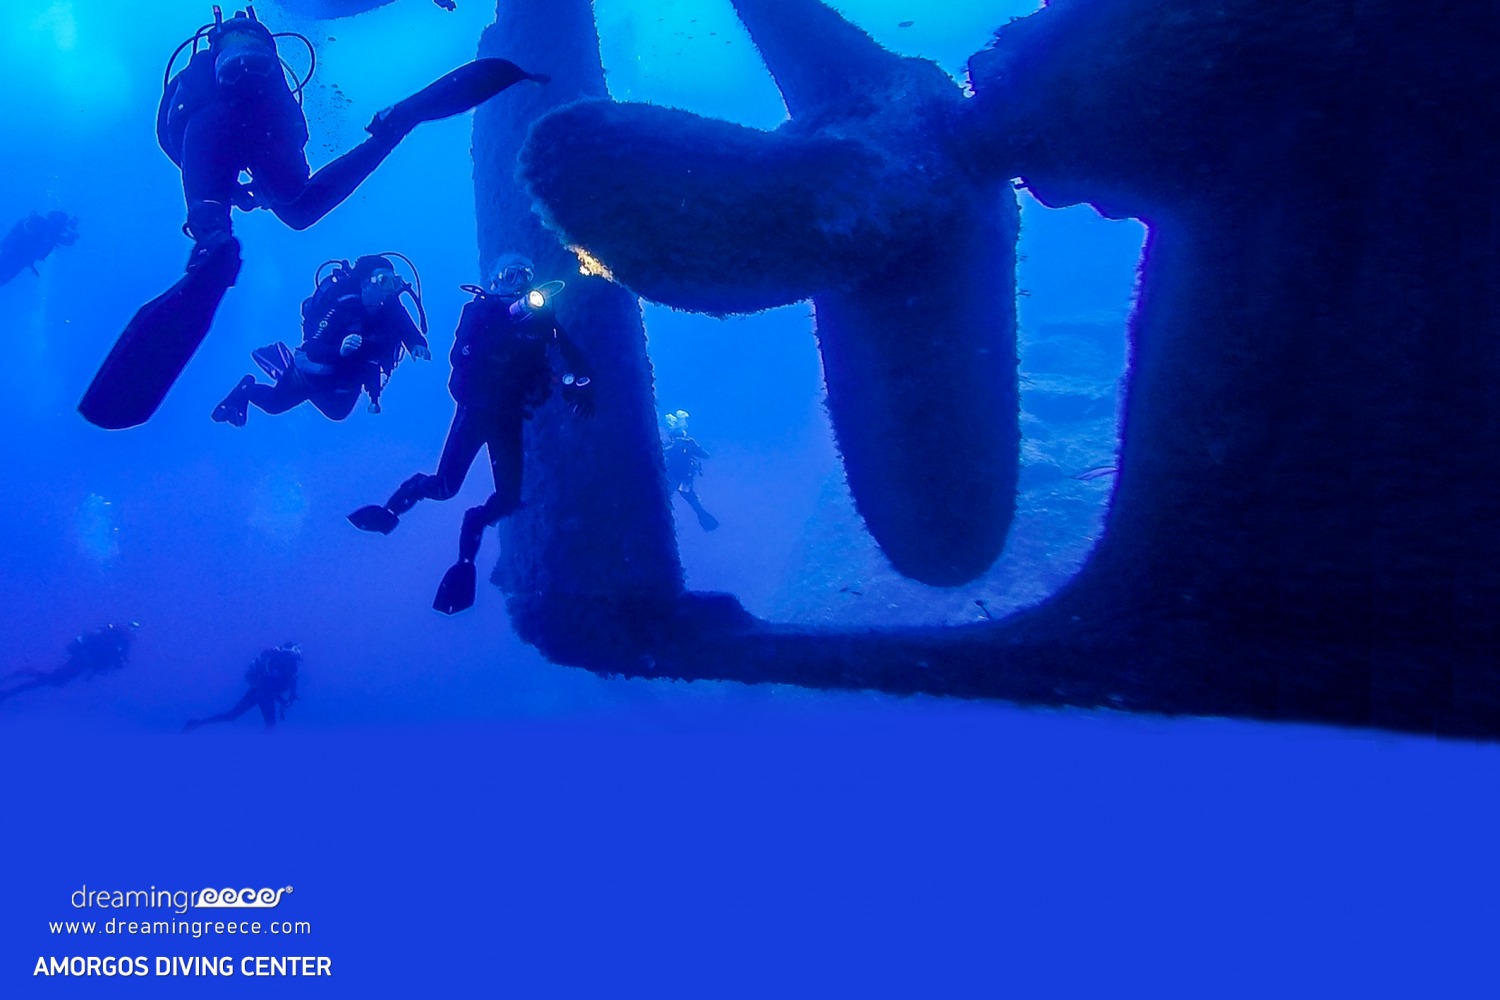 Amorgos Diving Center. Scuba diving in Greece. Amorgos Dive Center